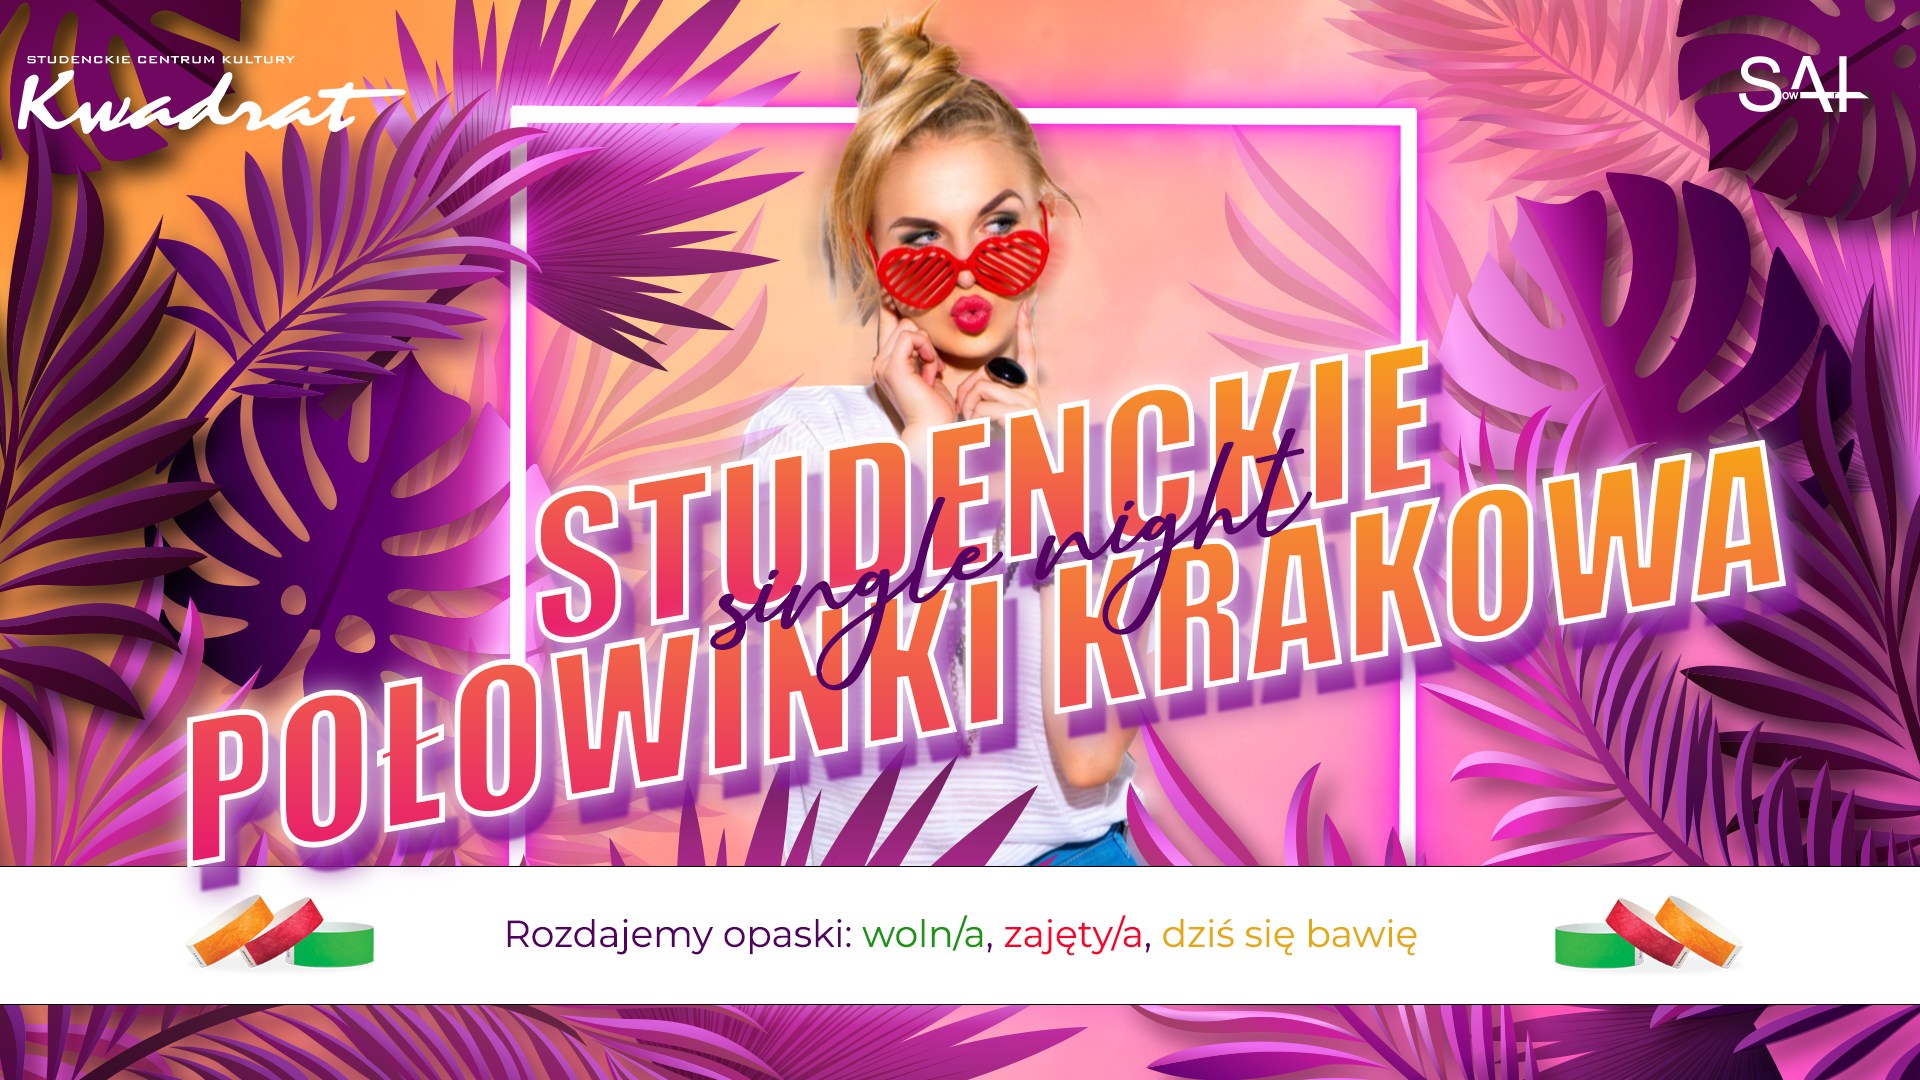 Studenckie Połowinki Krakowa - Single Party